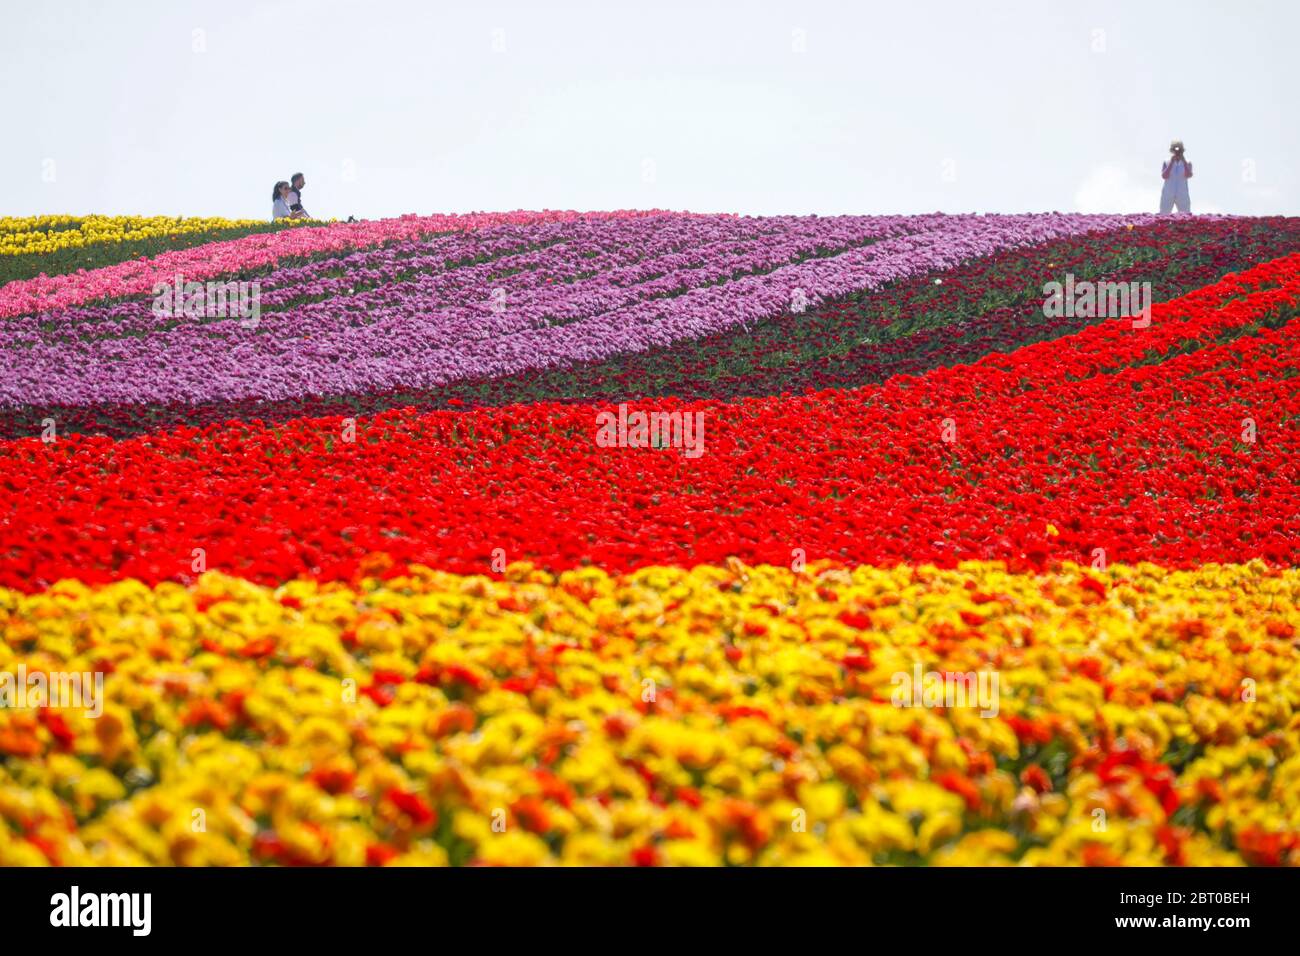 Grevenbroich, Nordrhein-Westfalen, Deutschland - bunte Tulpen blühen auf einem Tulpenfeld. Grevenbroich, Nordrhein-Westfalen, Deutschland - Bunte Tul Stockfoto